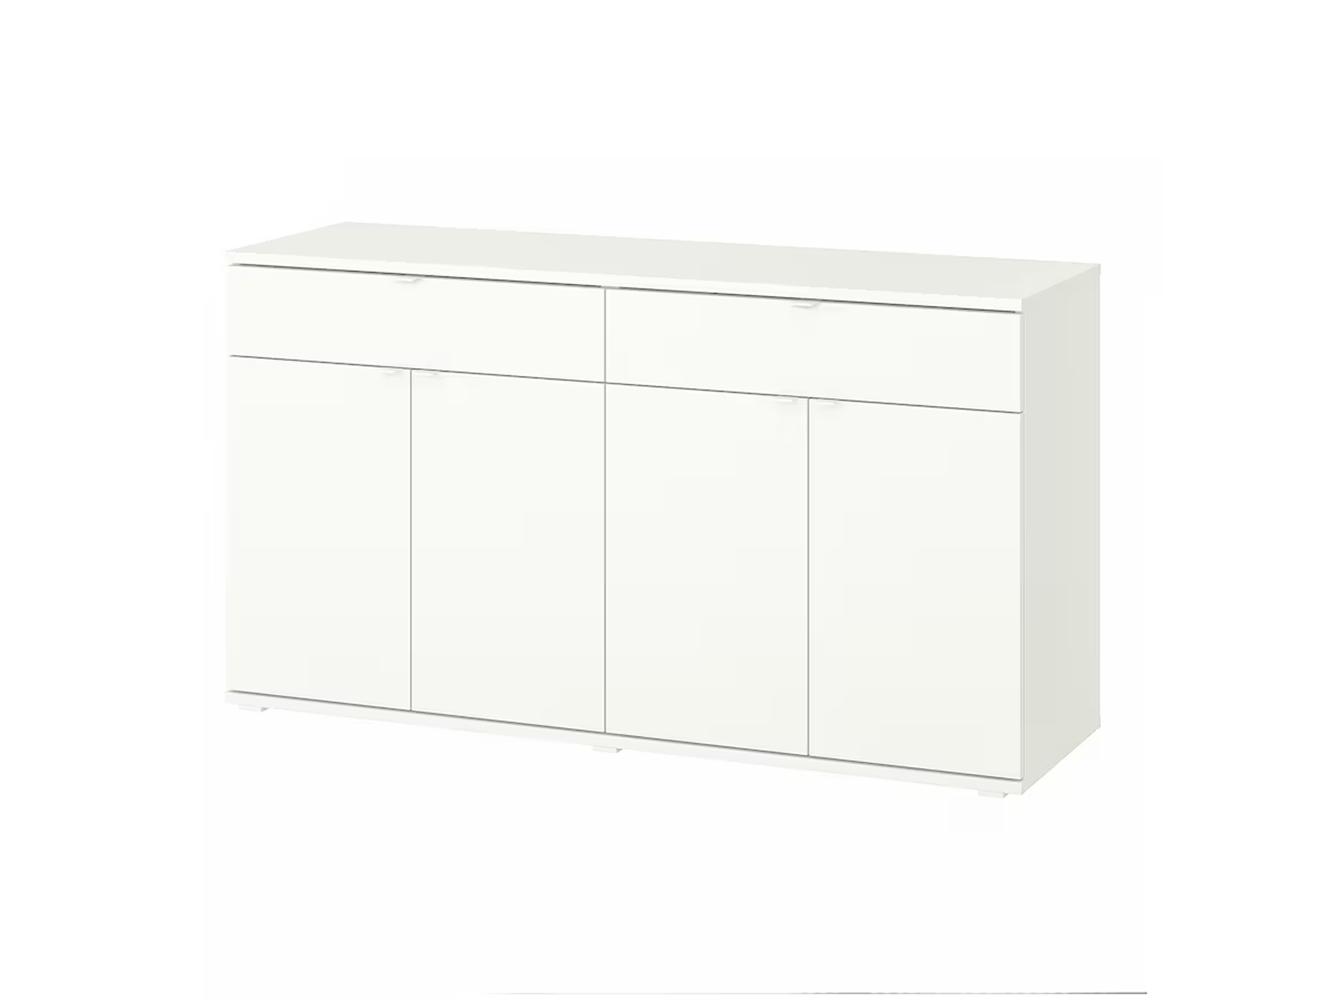 Комод Вихалс 113 white ИКЕА (IKEA)  изображение товара